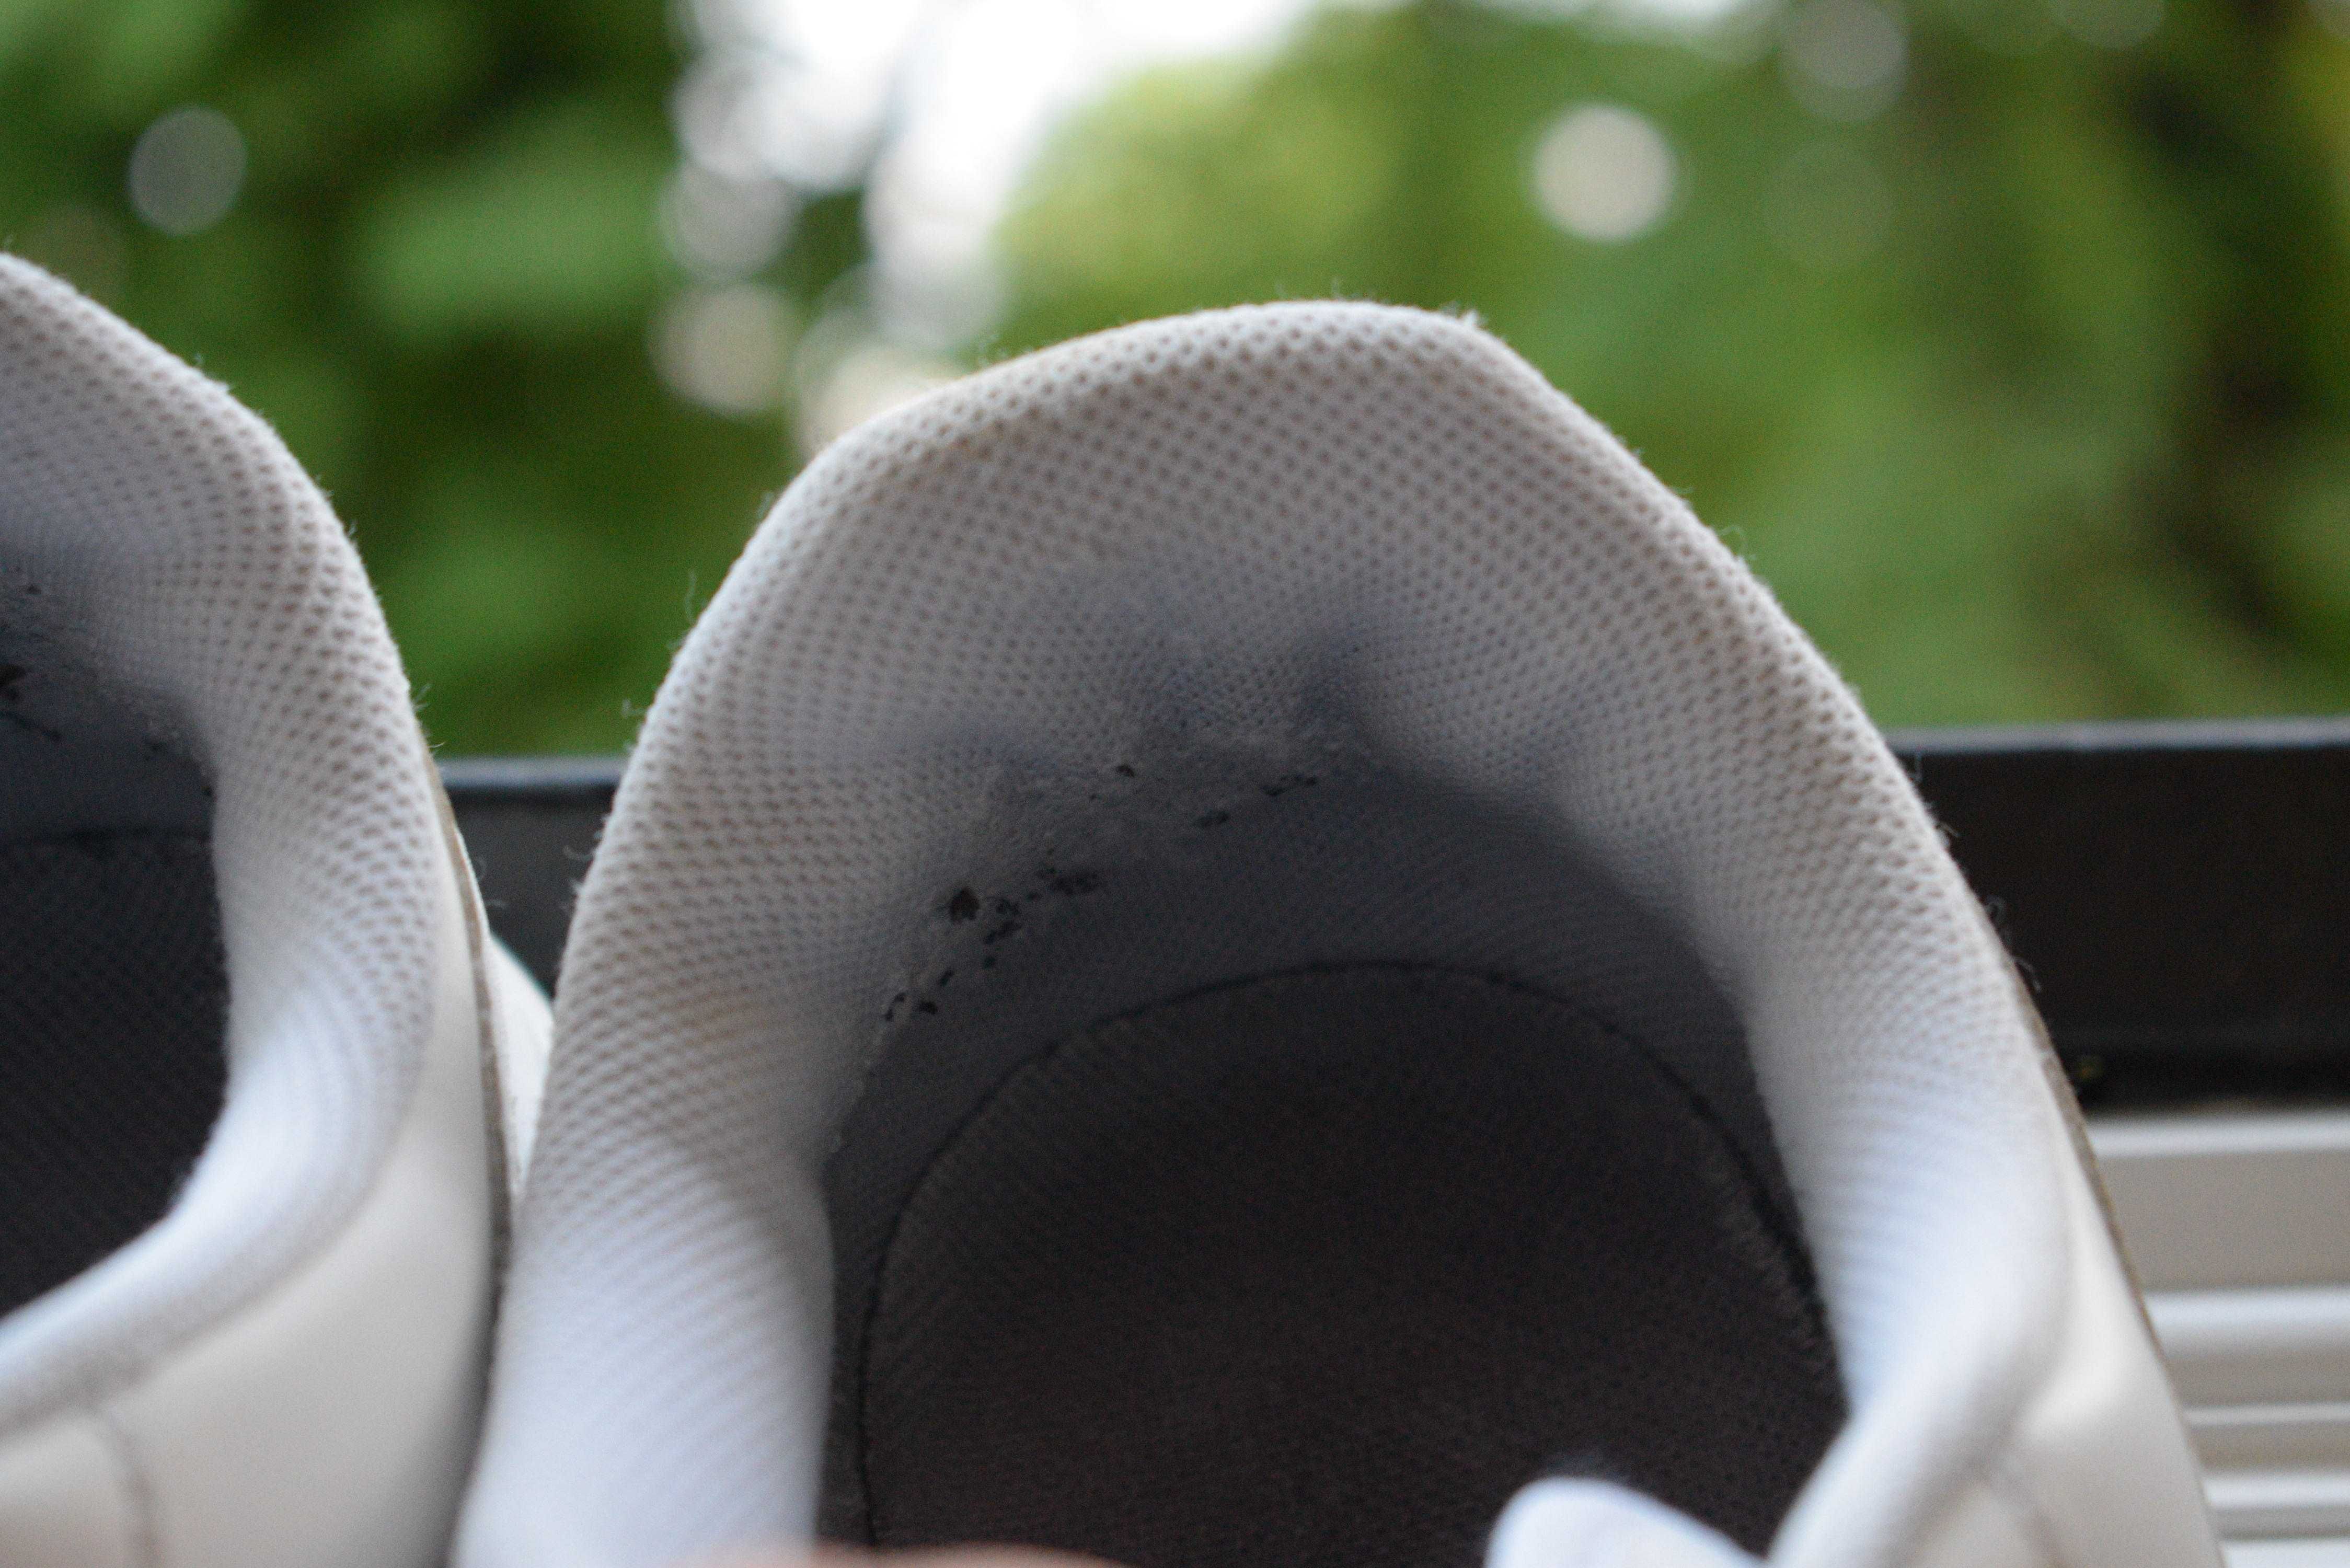 кожаные кроссовки туфли кеды слипоны мокасины Nike Force р. 46